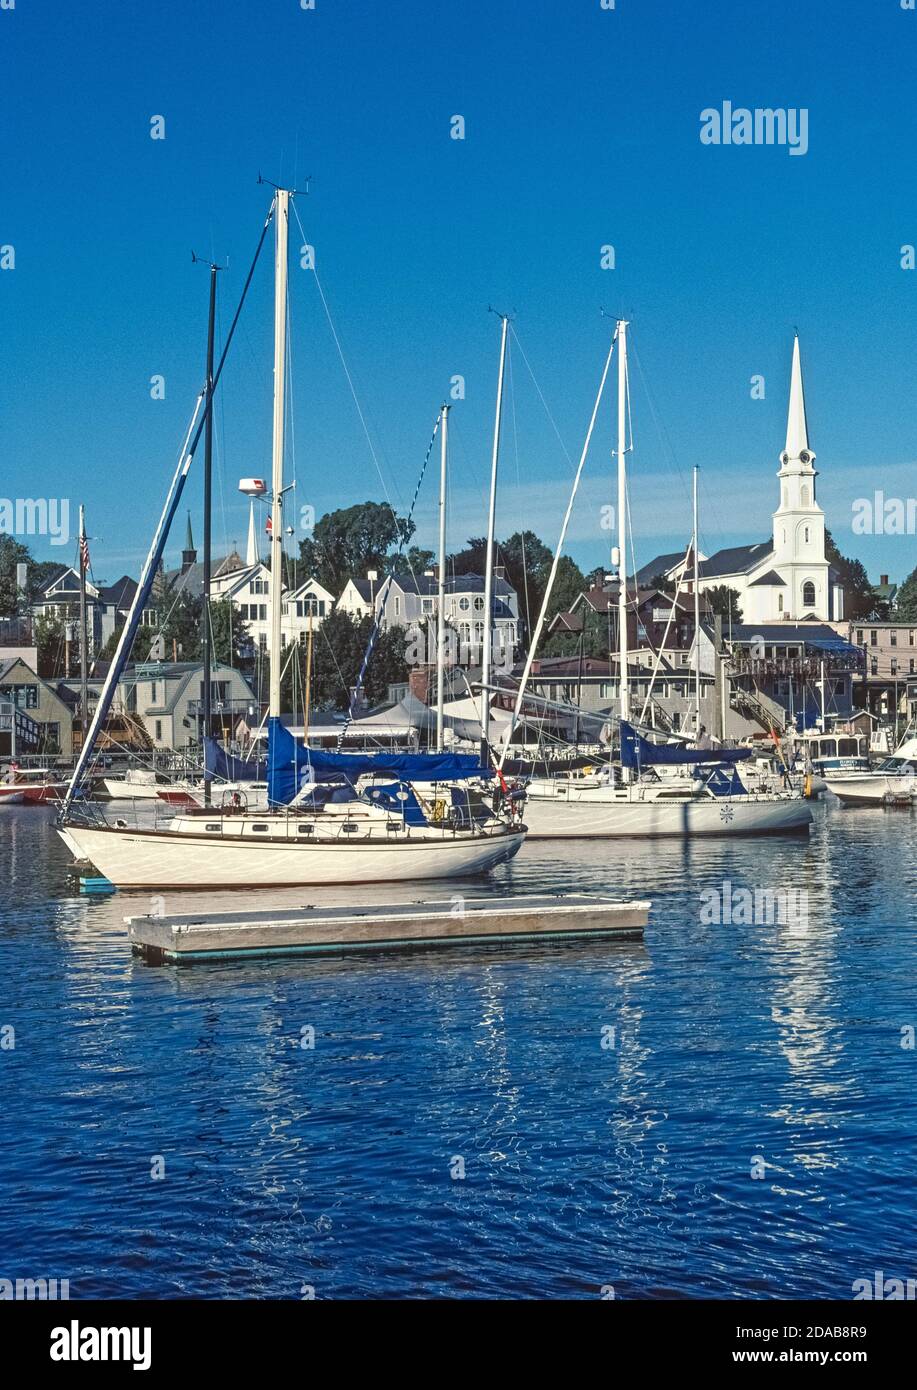 L'affascinante porto costiero di Camden, Maine, USA, è l'iconica città del New England con la sua chiesa bianca in acciaio e un porto pieno di barche a vela moderne e classiche. Queste includono gli storici golosi che offrono gite in barca a vela nella Baia di Penobscot e lungo le coste nordorientali sull'Oceano Atlantico. Foto Stock